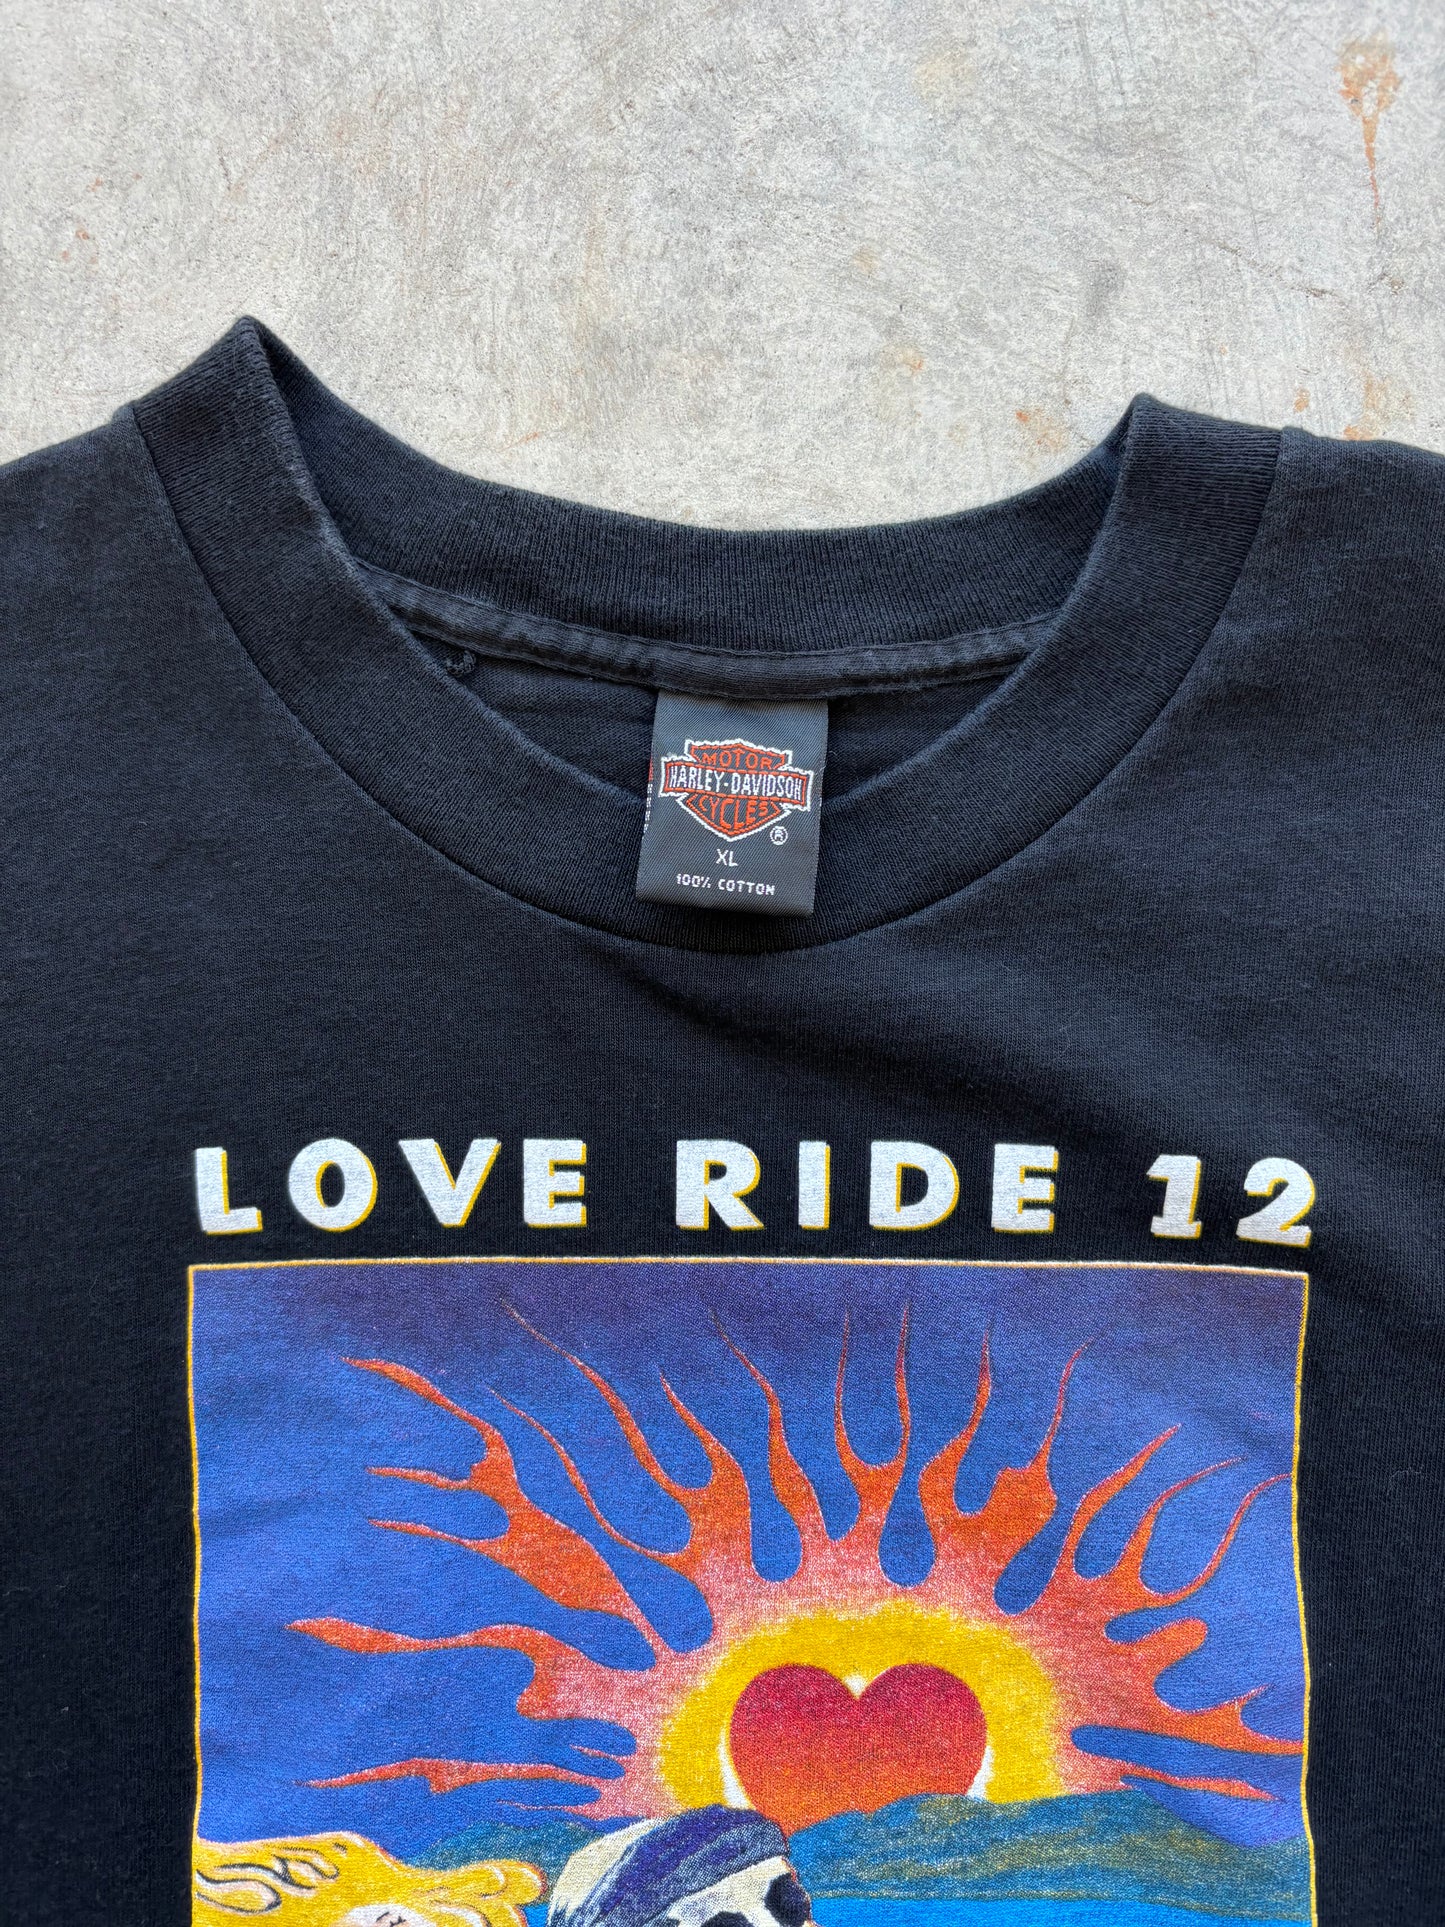 1995 Harley Davidson Love Ride Tee Size XL